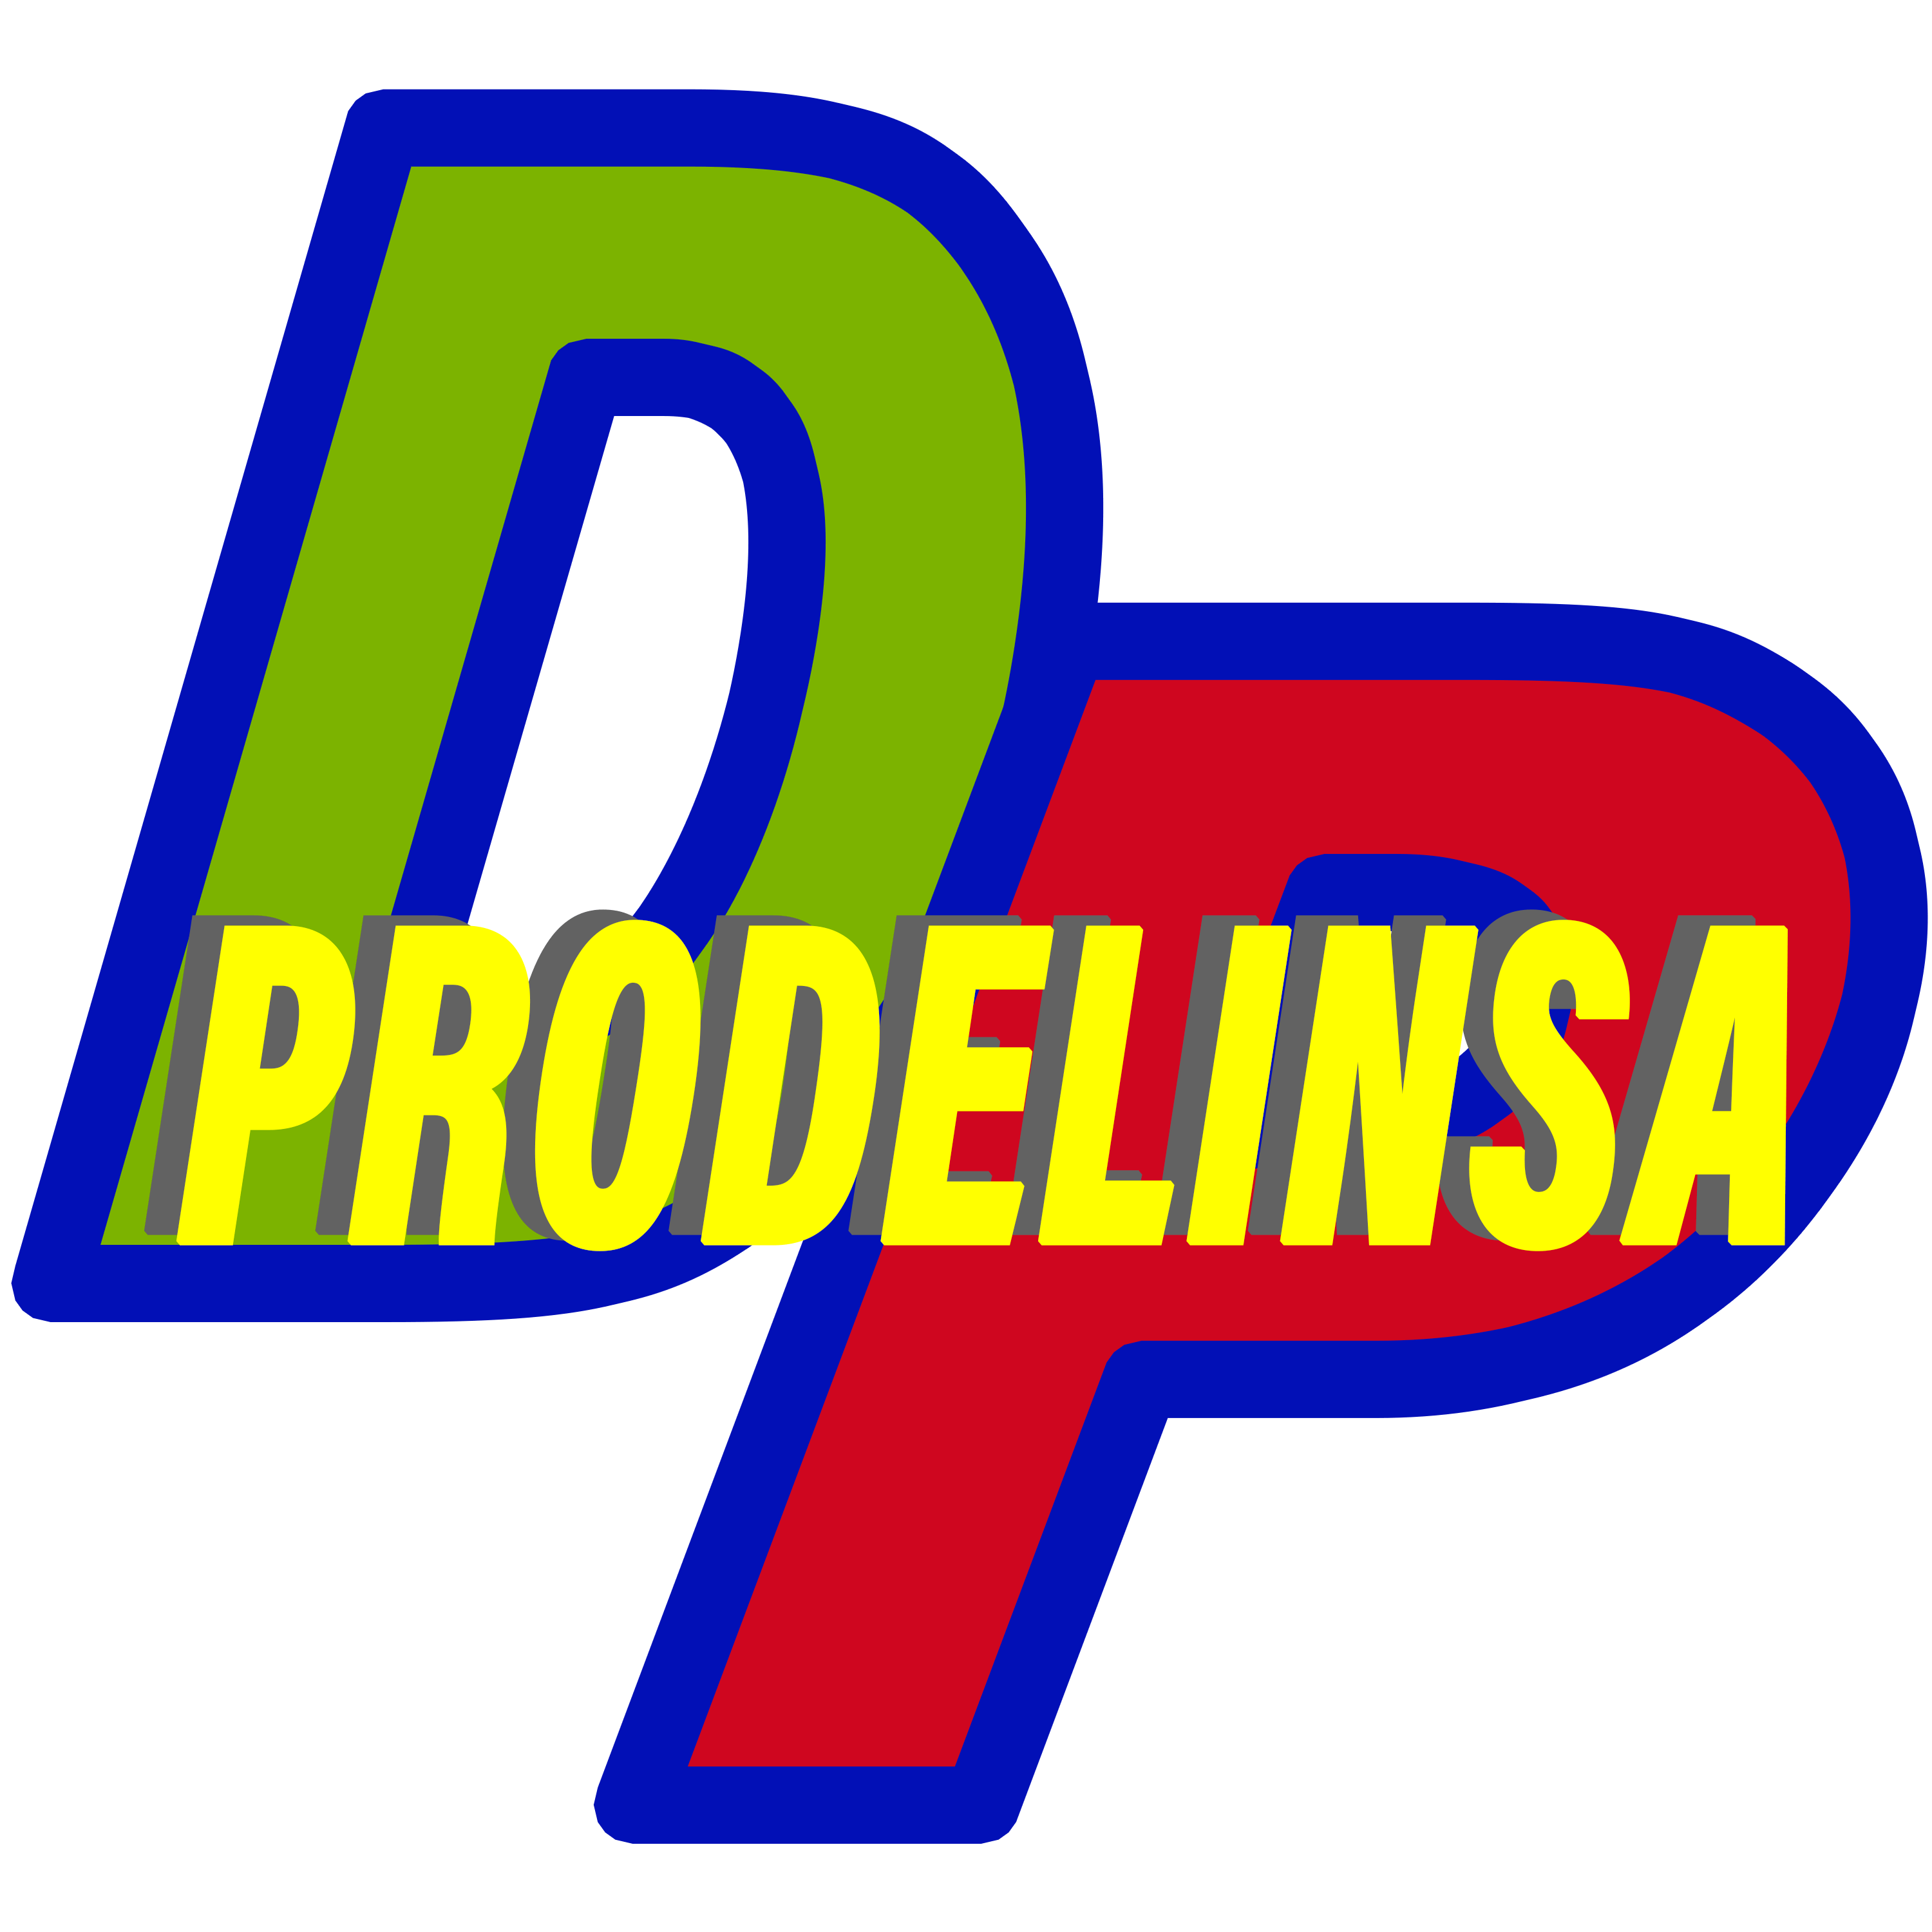 Prodelinsa